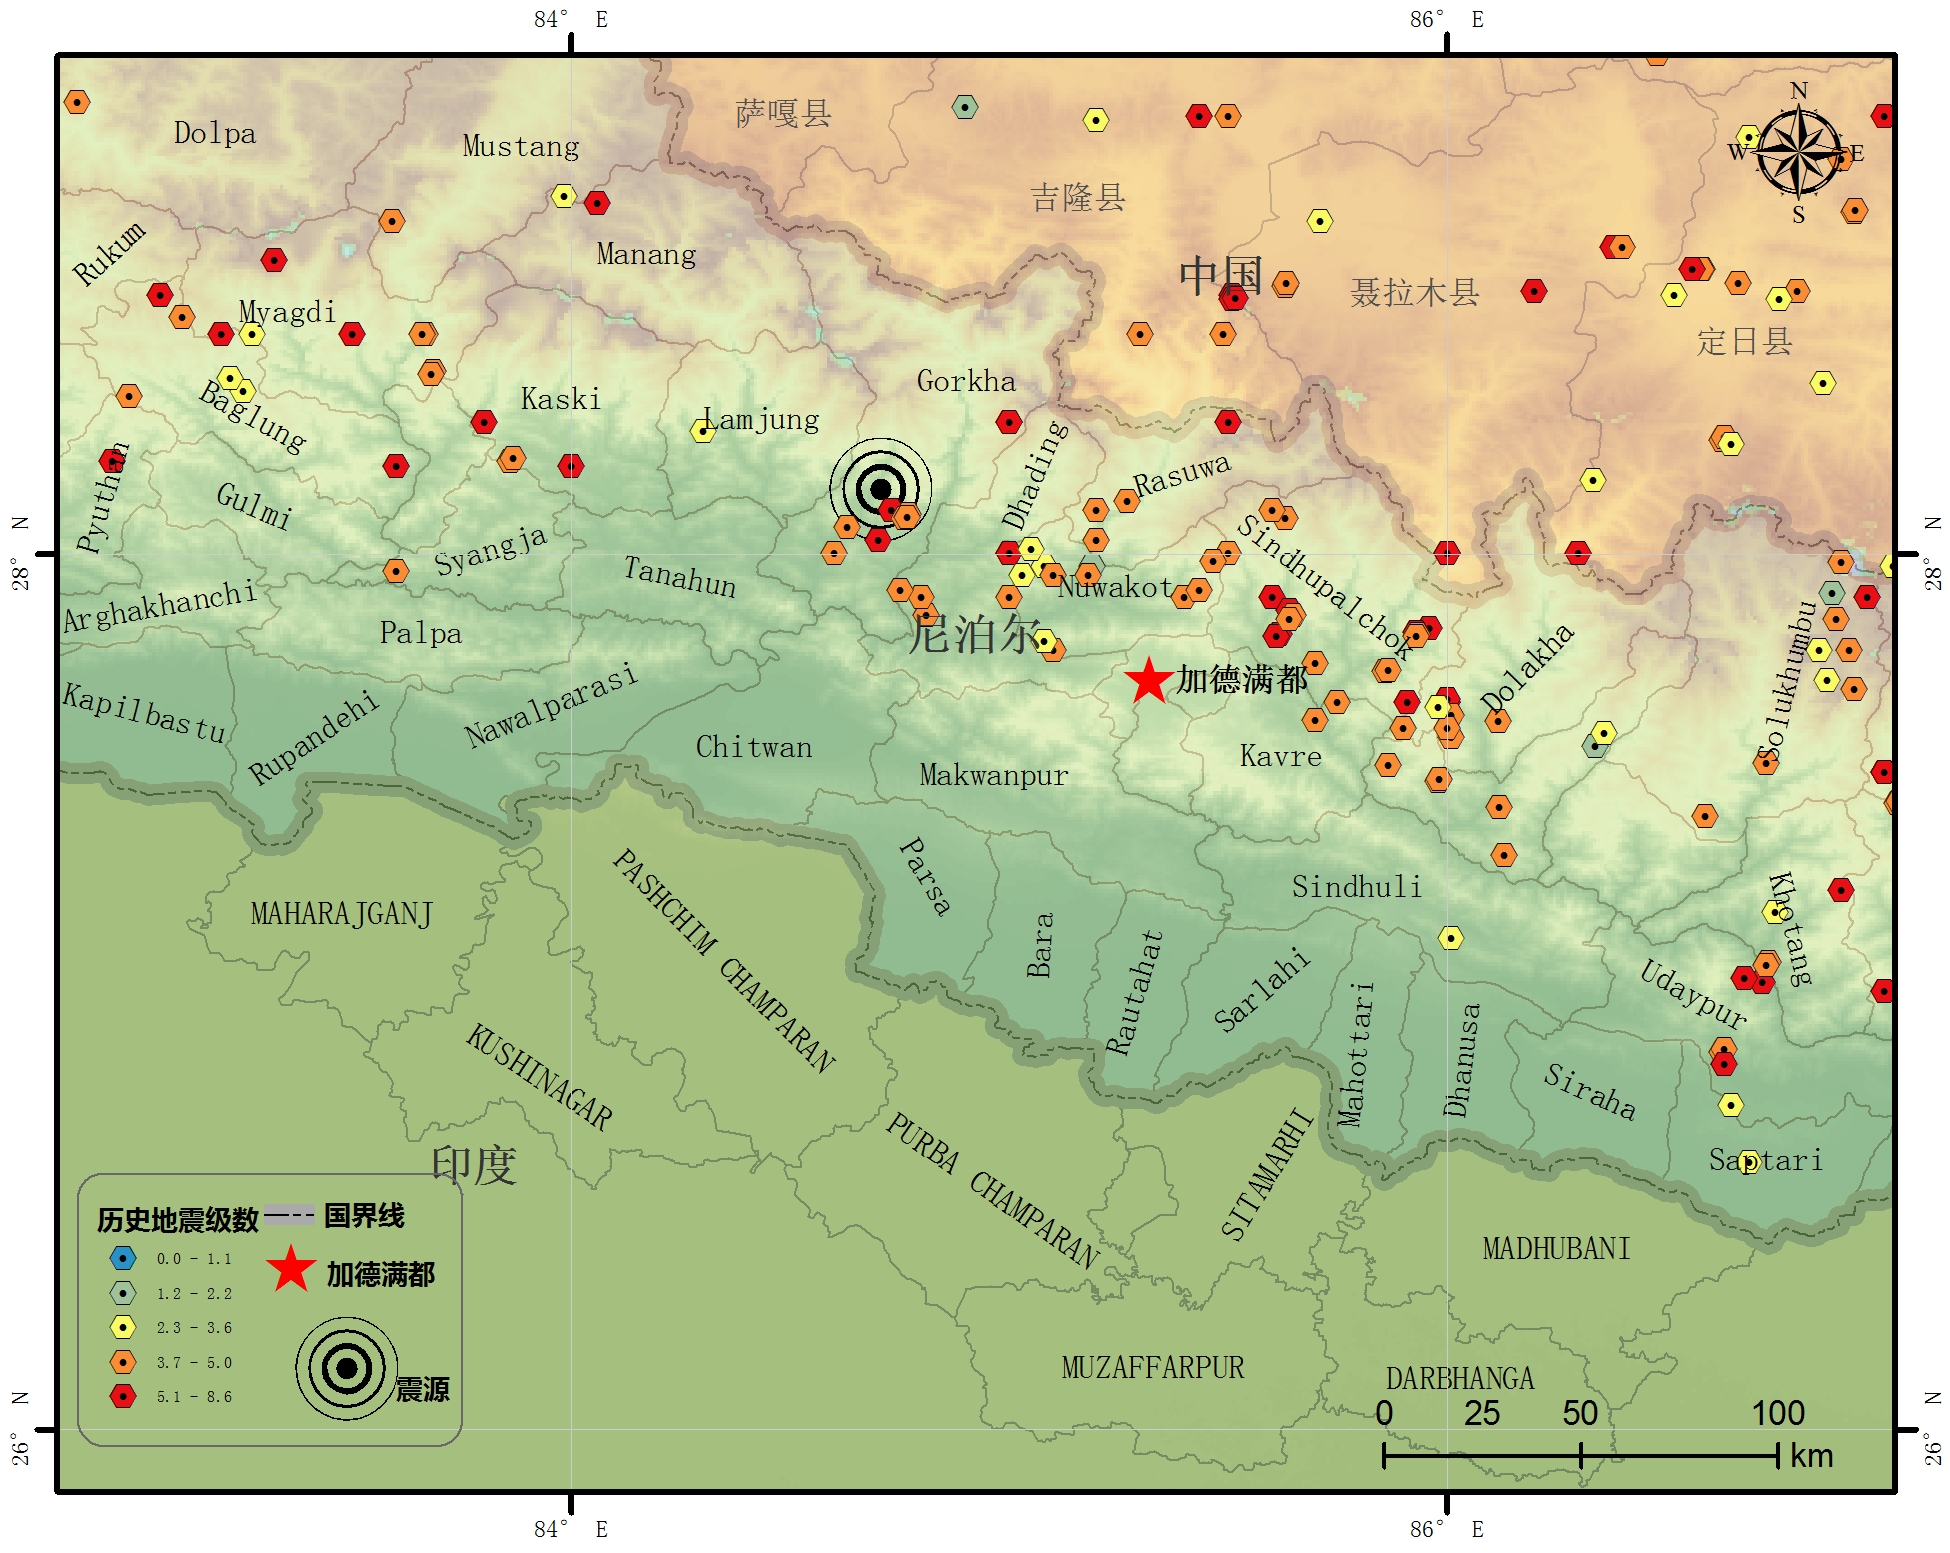 尼泊尔周边历史地震资料数据